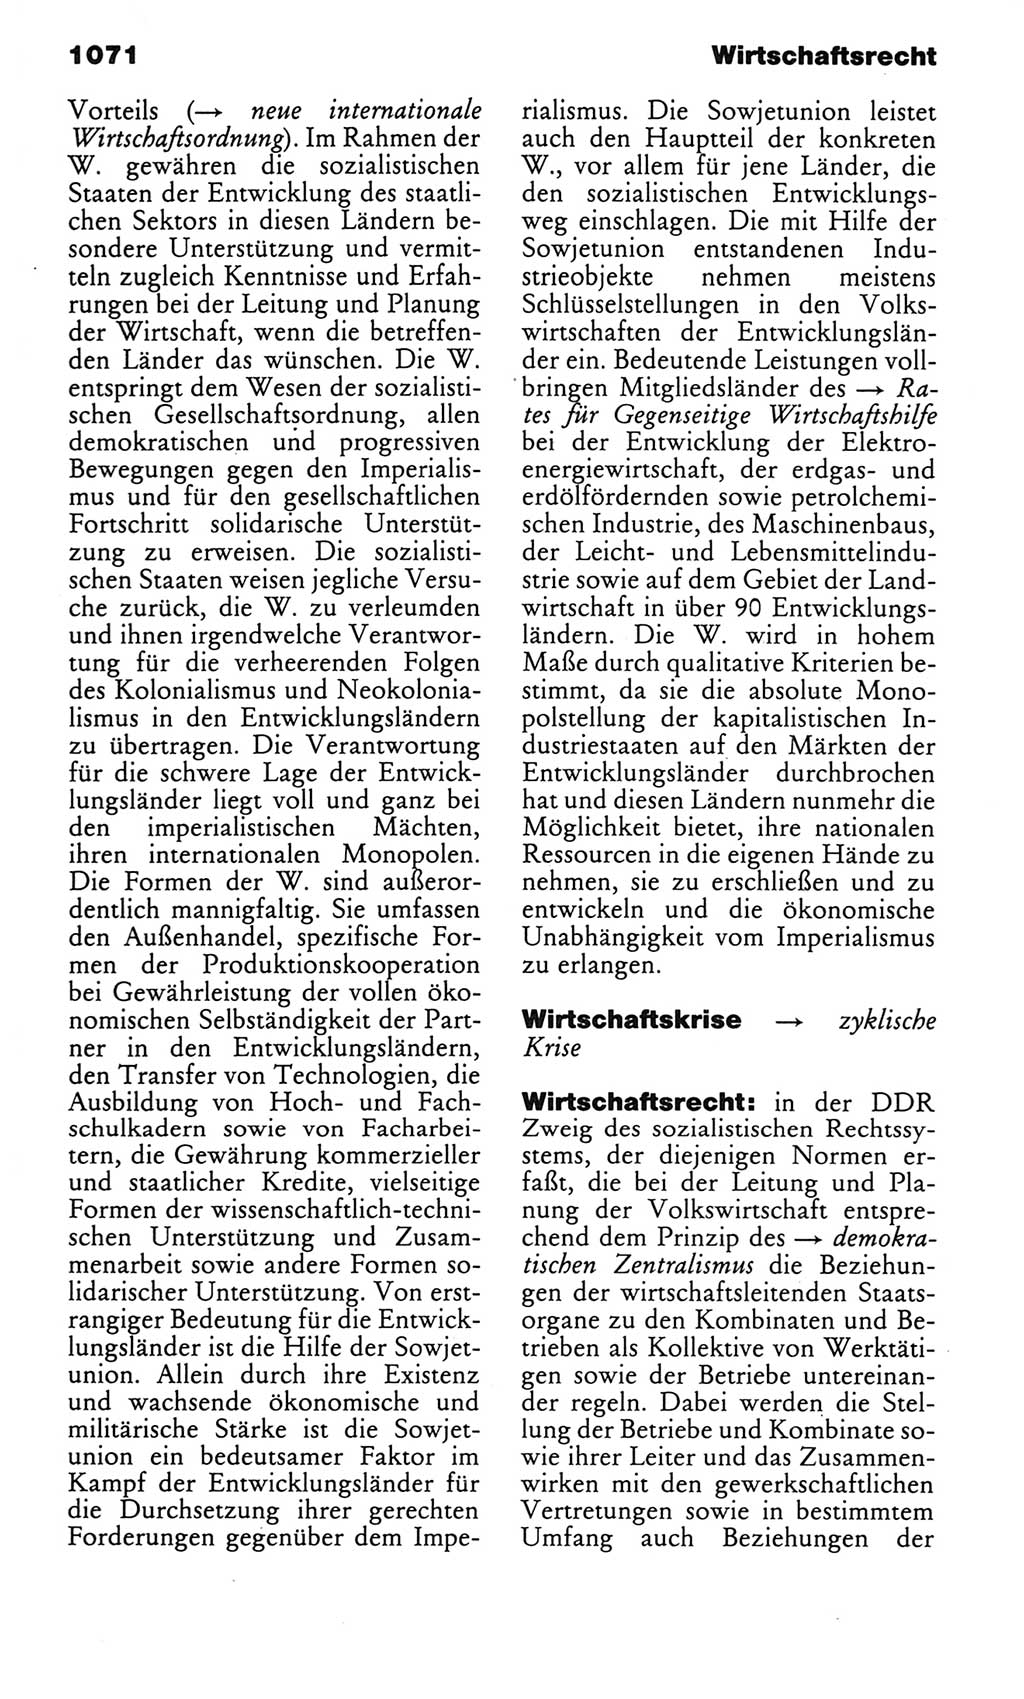 Kleines politisches Wörterbuch [Deutsche Demokratische Republik (DDR)] 1983, Seite 1071 (Kl. pol. Wb. DDR 1983, S. 1071)